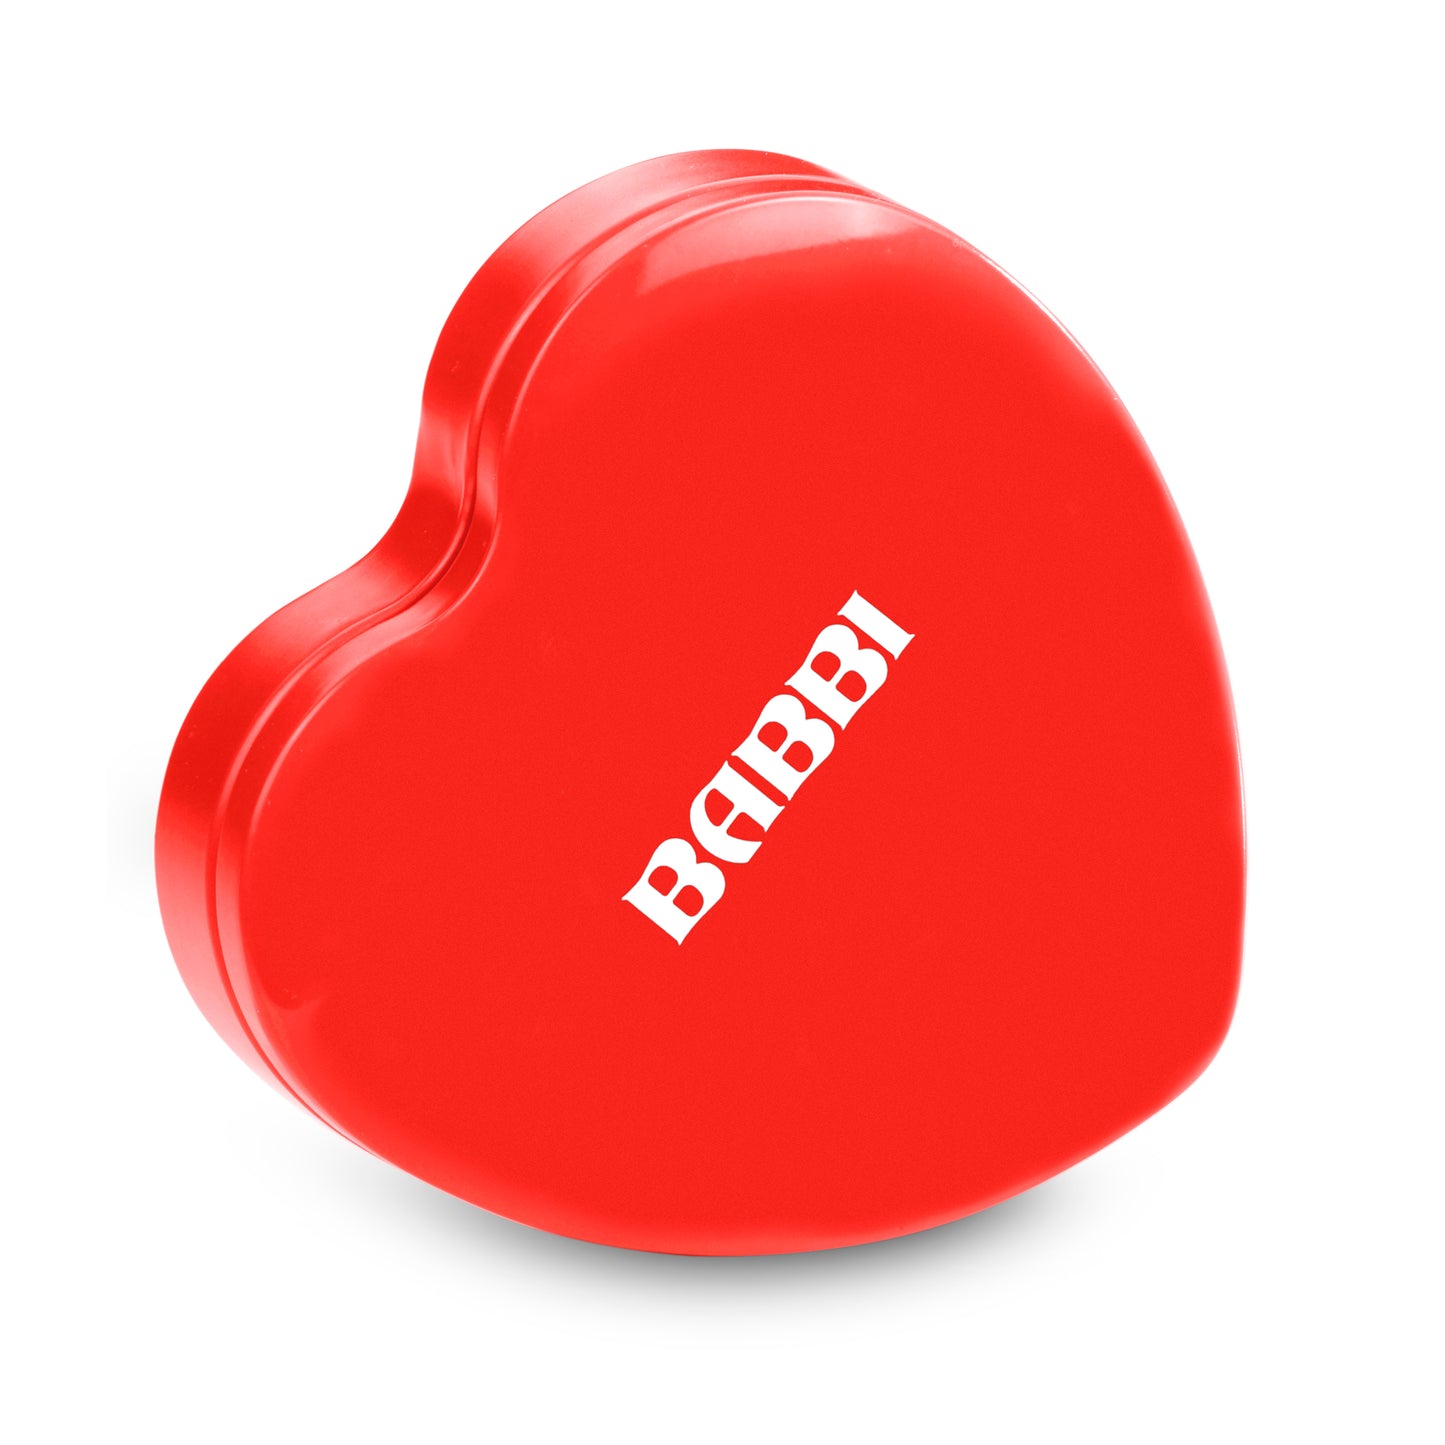 Babbini Heart Tin LOVE Edition - NEW!